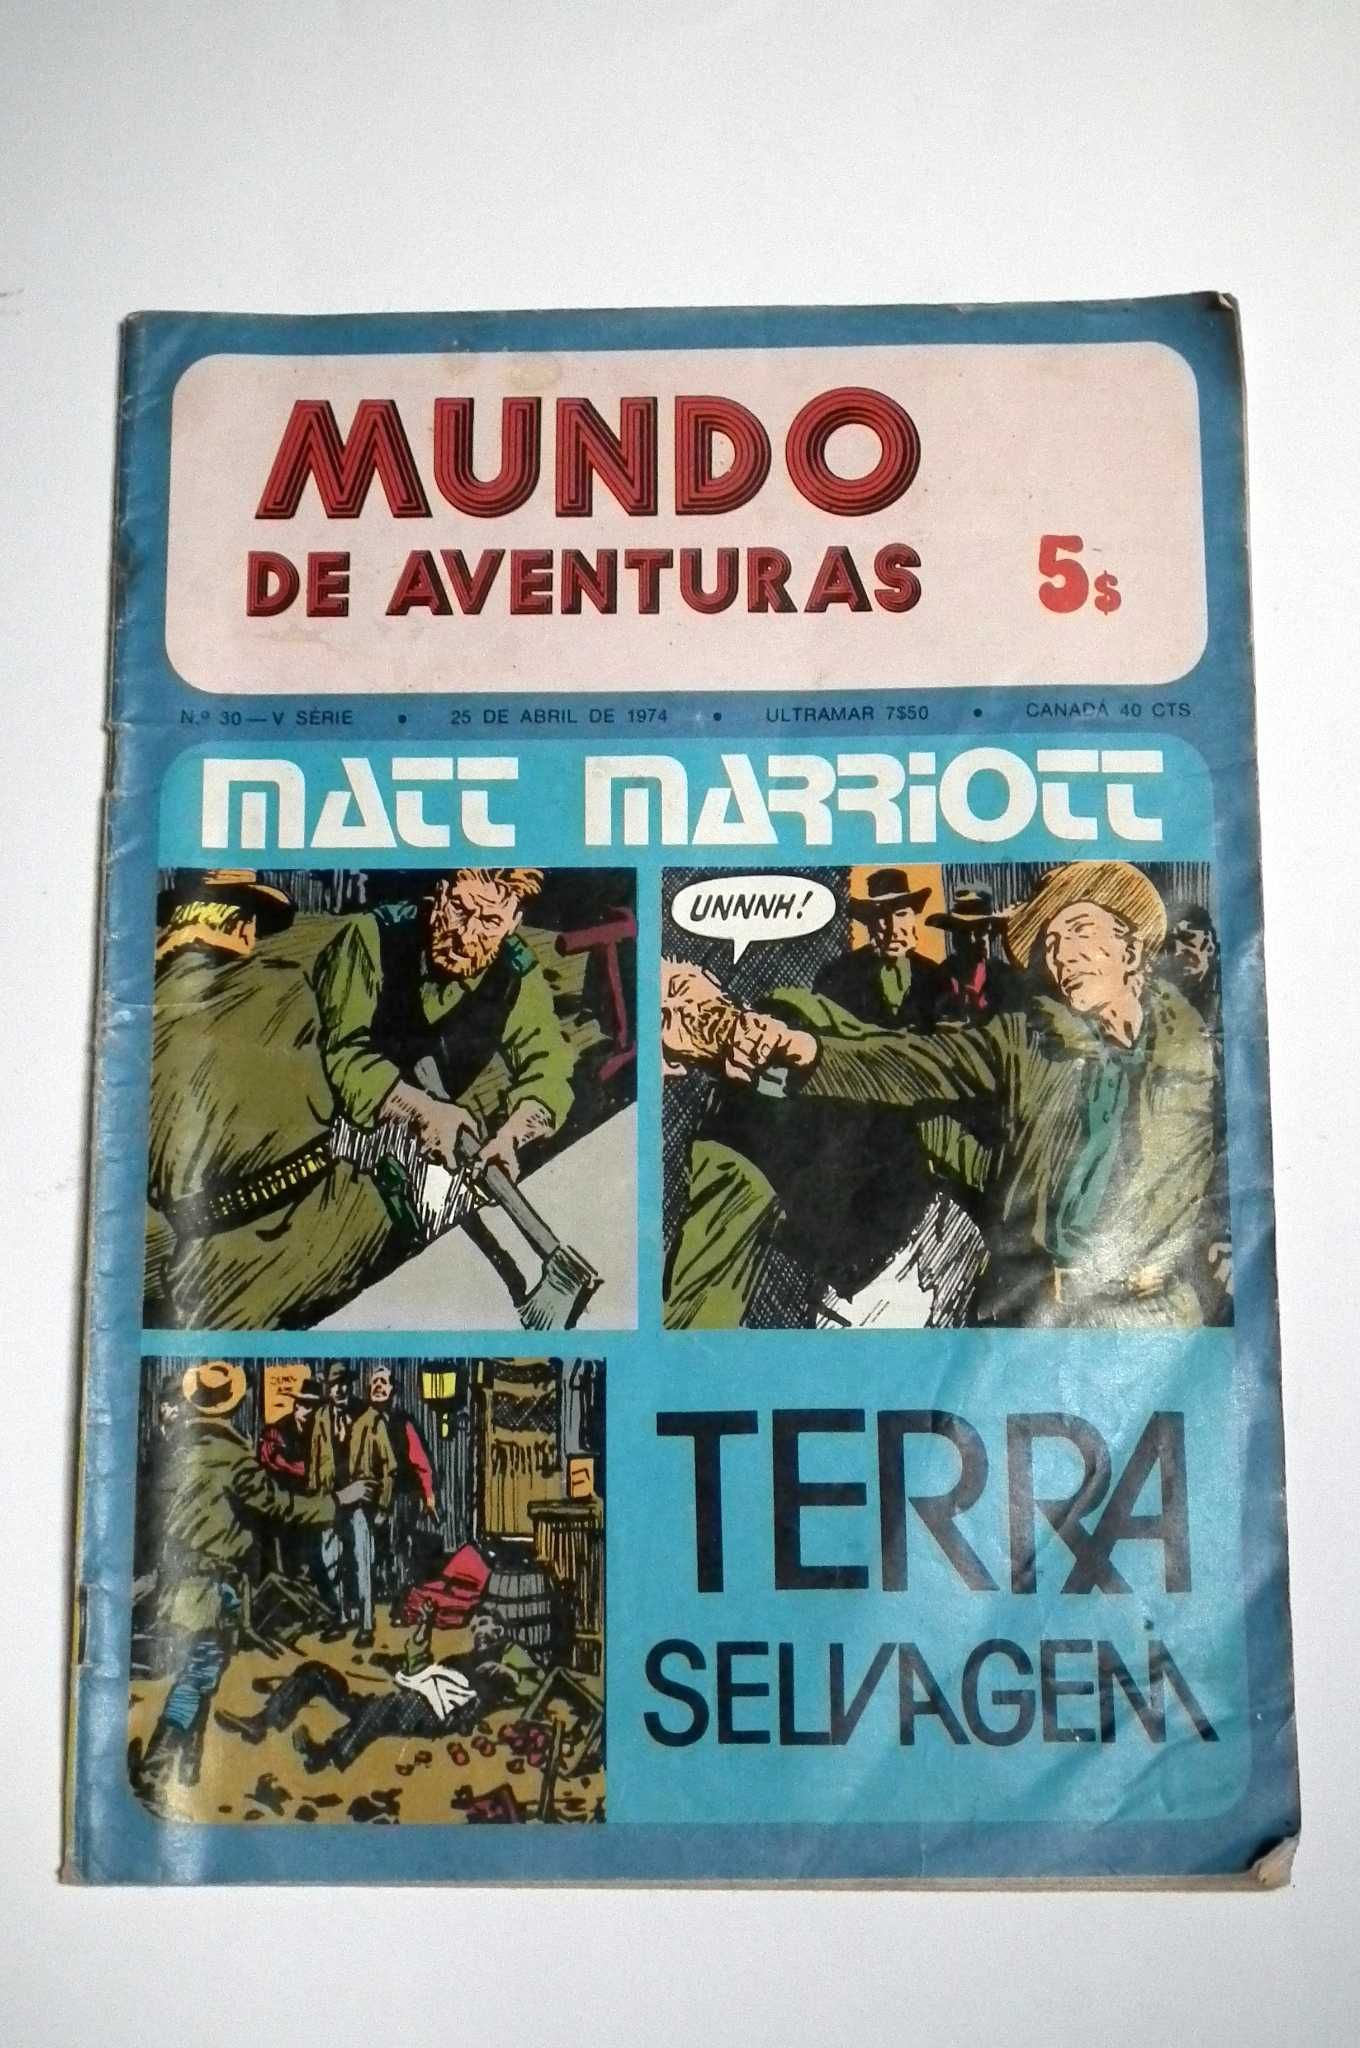 BD Mundo de Aventuras de 25 de Abril de 1974. Envio grátis.